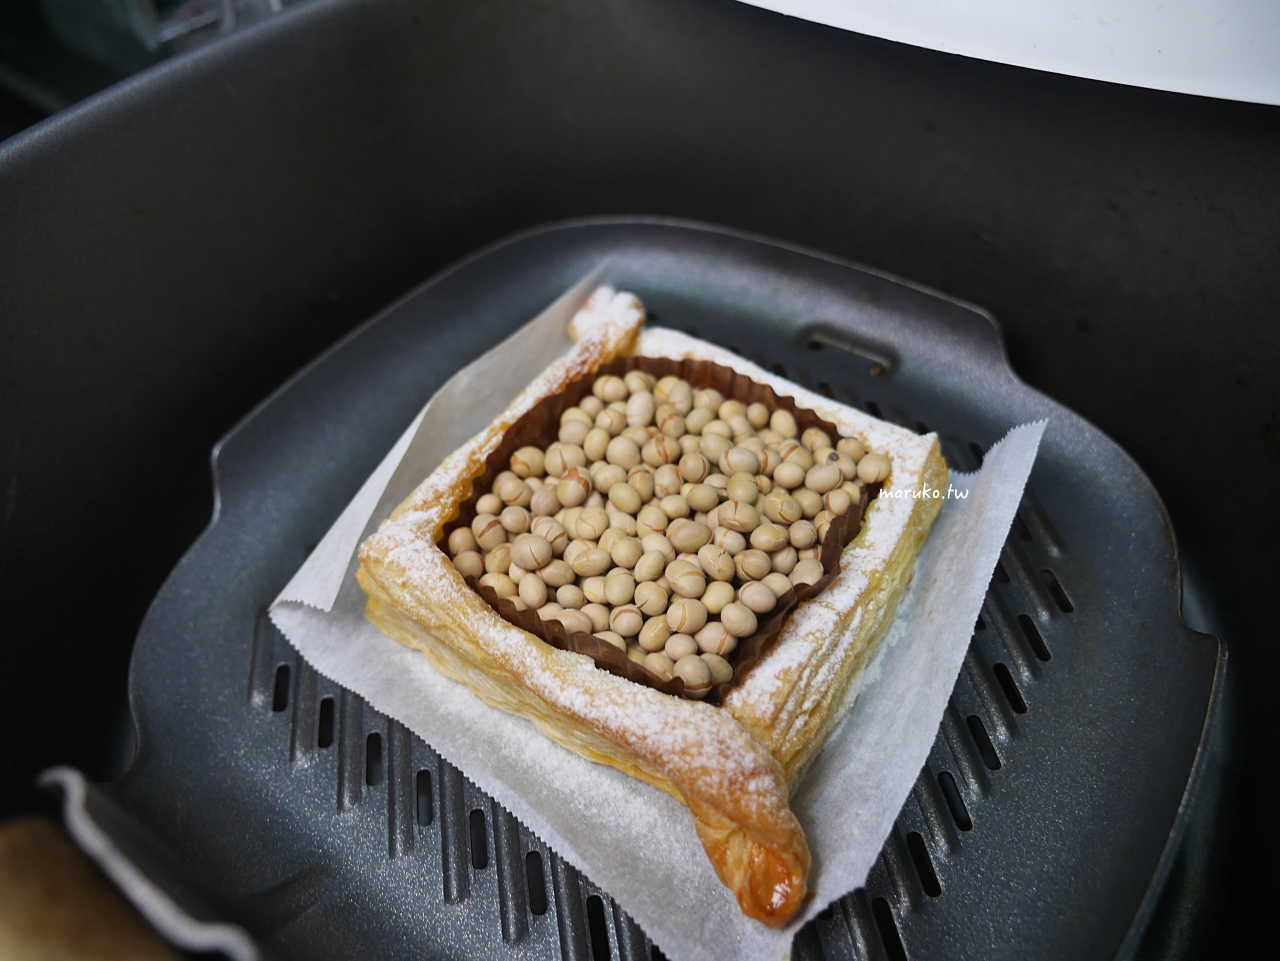 【食譜】丹麥草莓派 簡單冷凍起酥皮做千層派塔 氣炸鍋食譜 @Maruko與美食有個約會